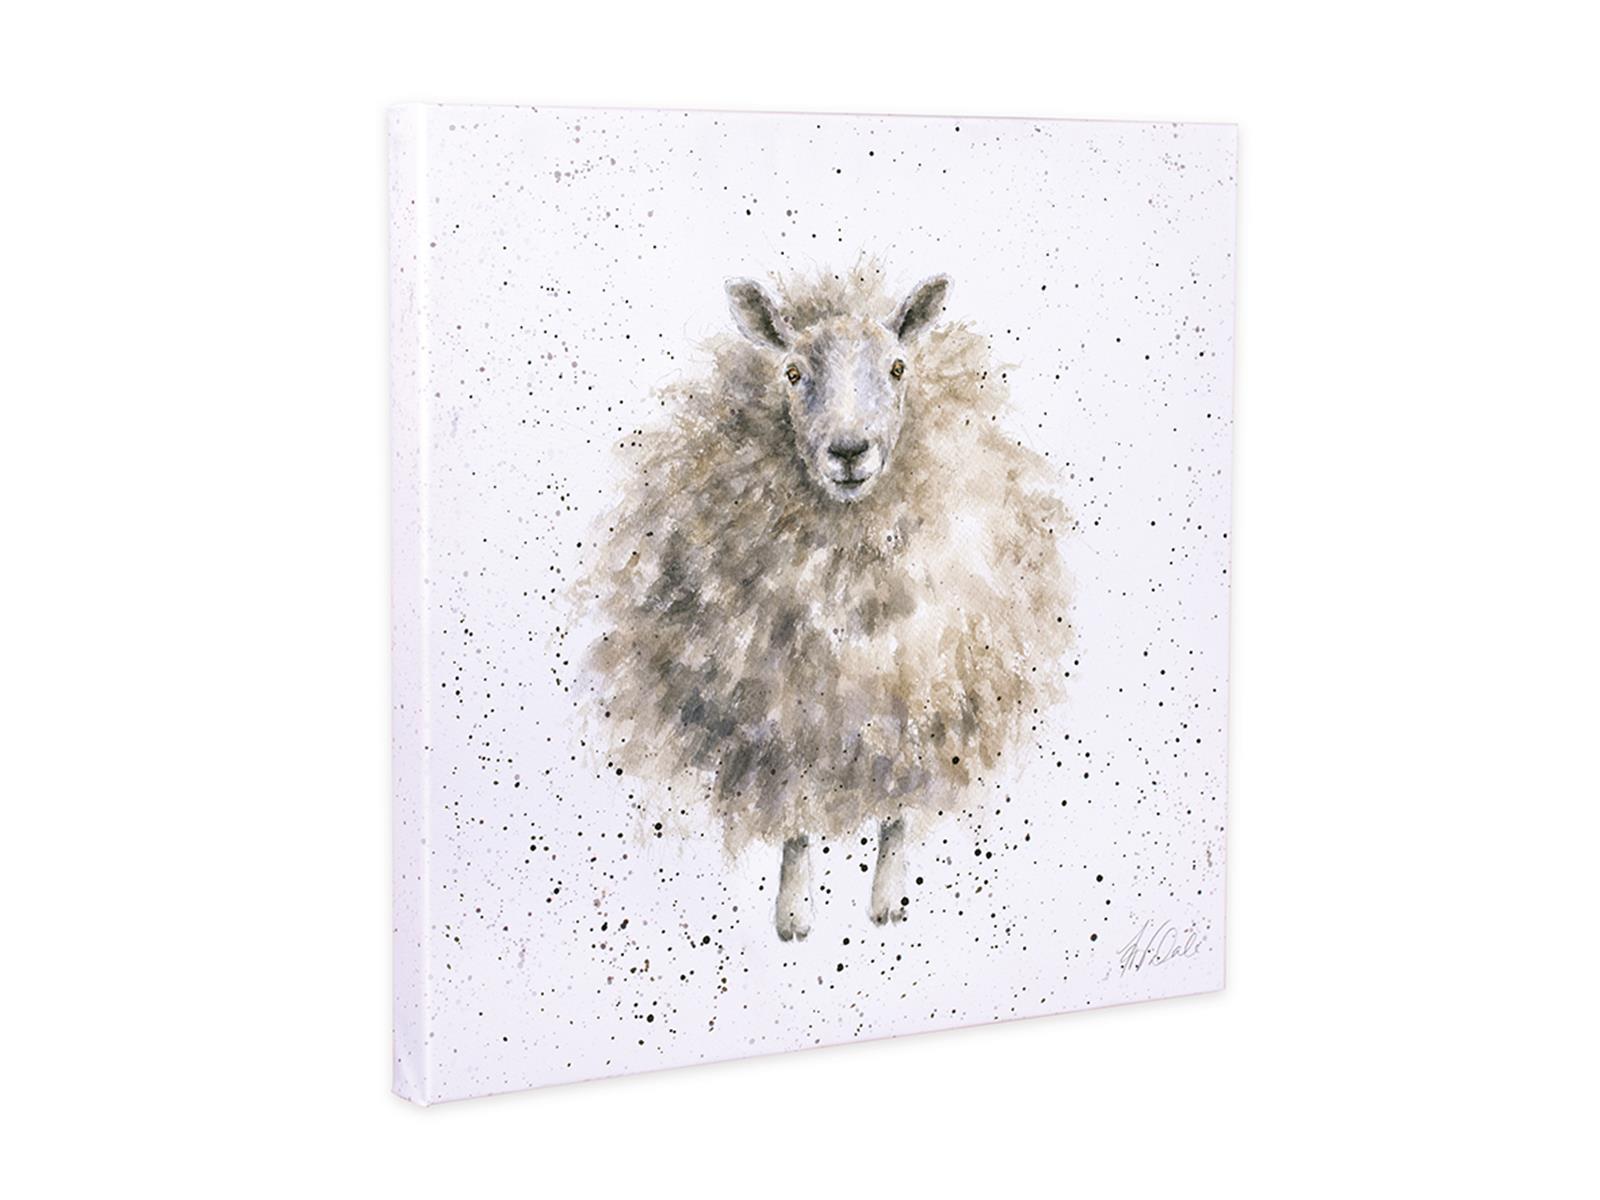 Wrendale Leinwand klein, Aufdruck Schaf, "The Wooly Jumper", 20x20 cm